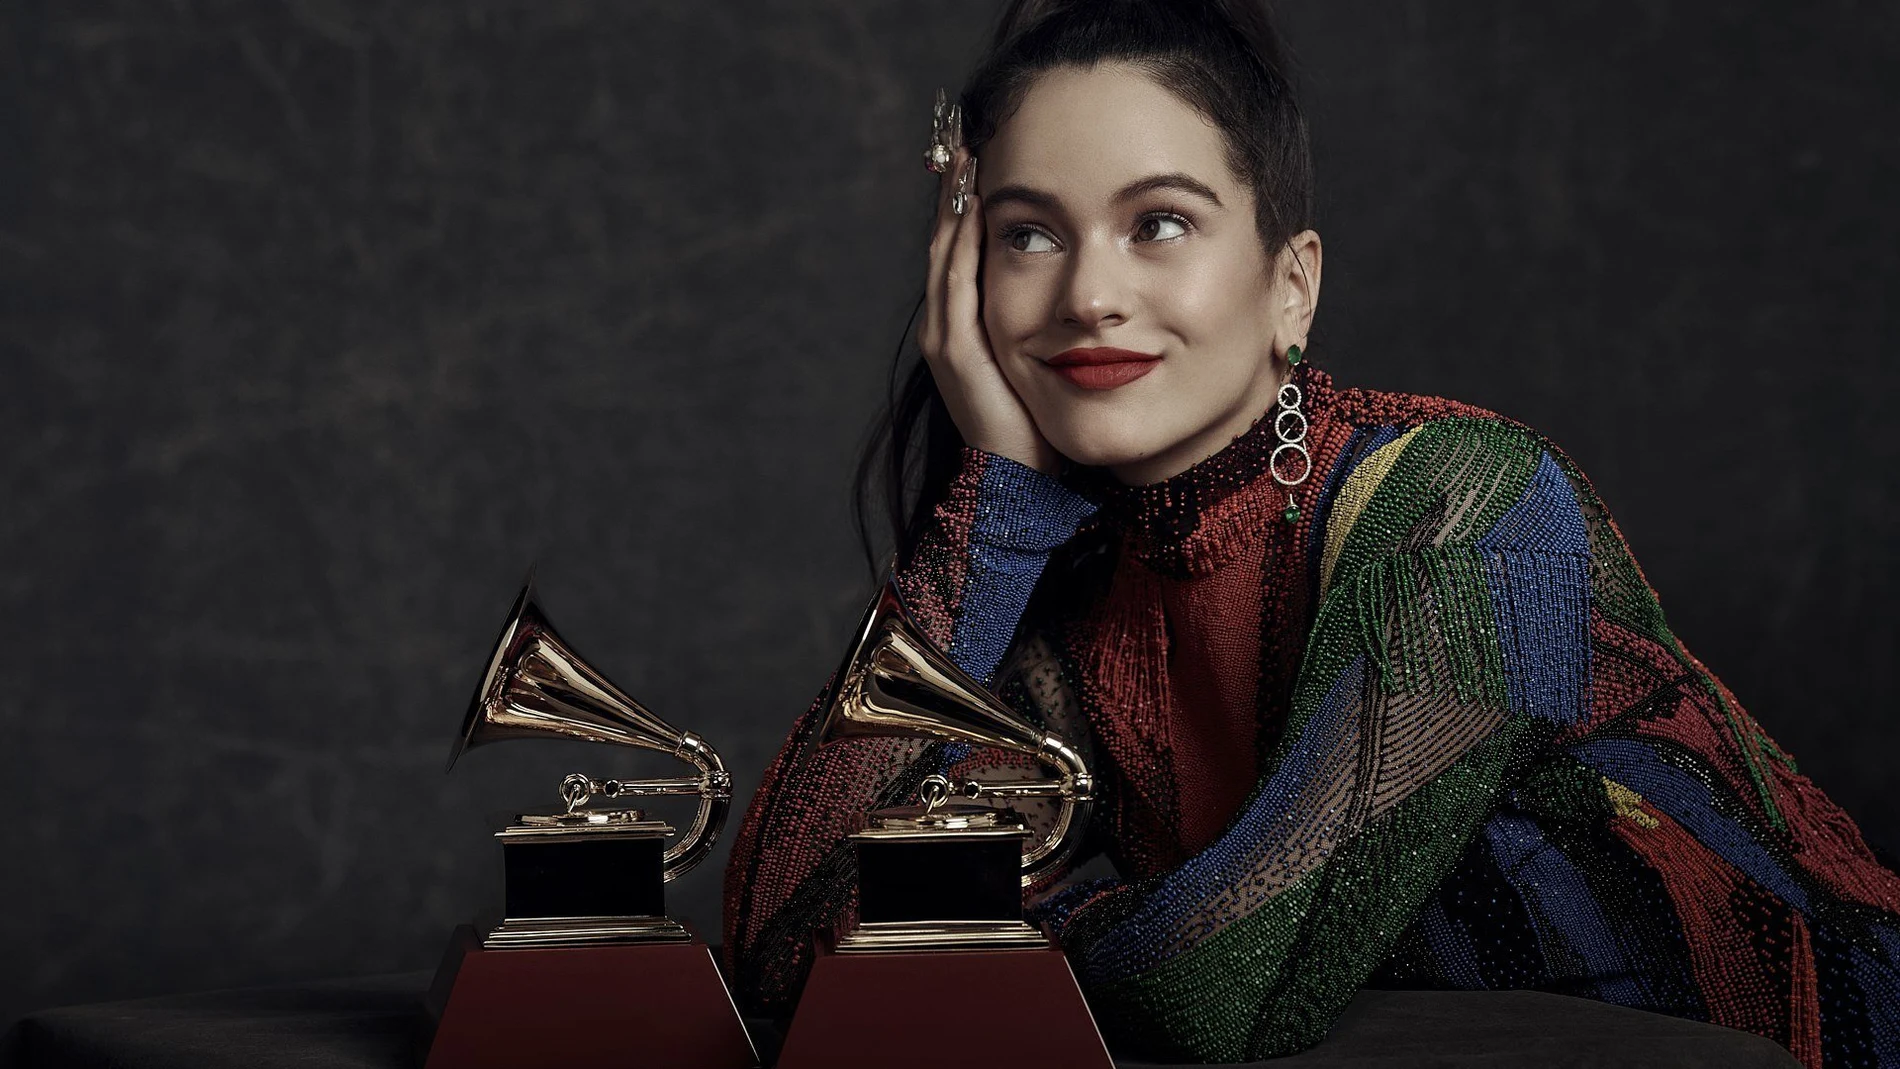 La española Rosalía, ganadora de los Latin Grammy a mejor fusión/interpretación urbana y mejor canción alternativa / EFE